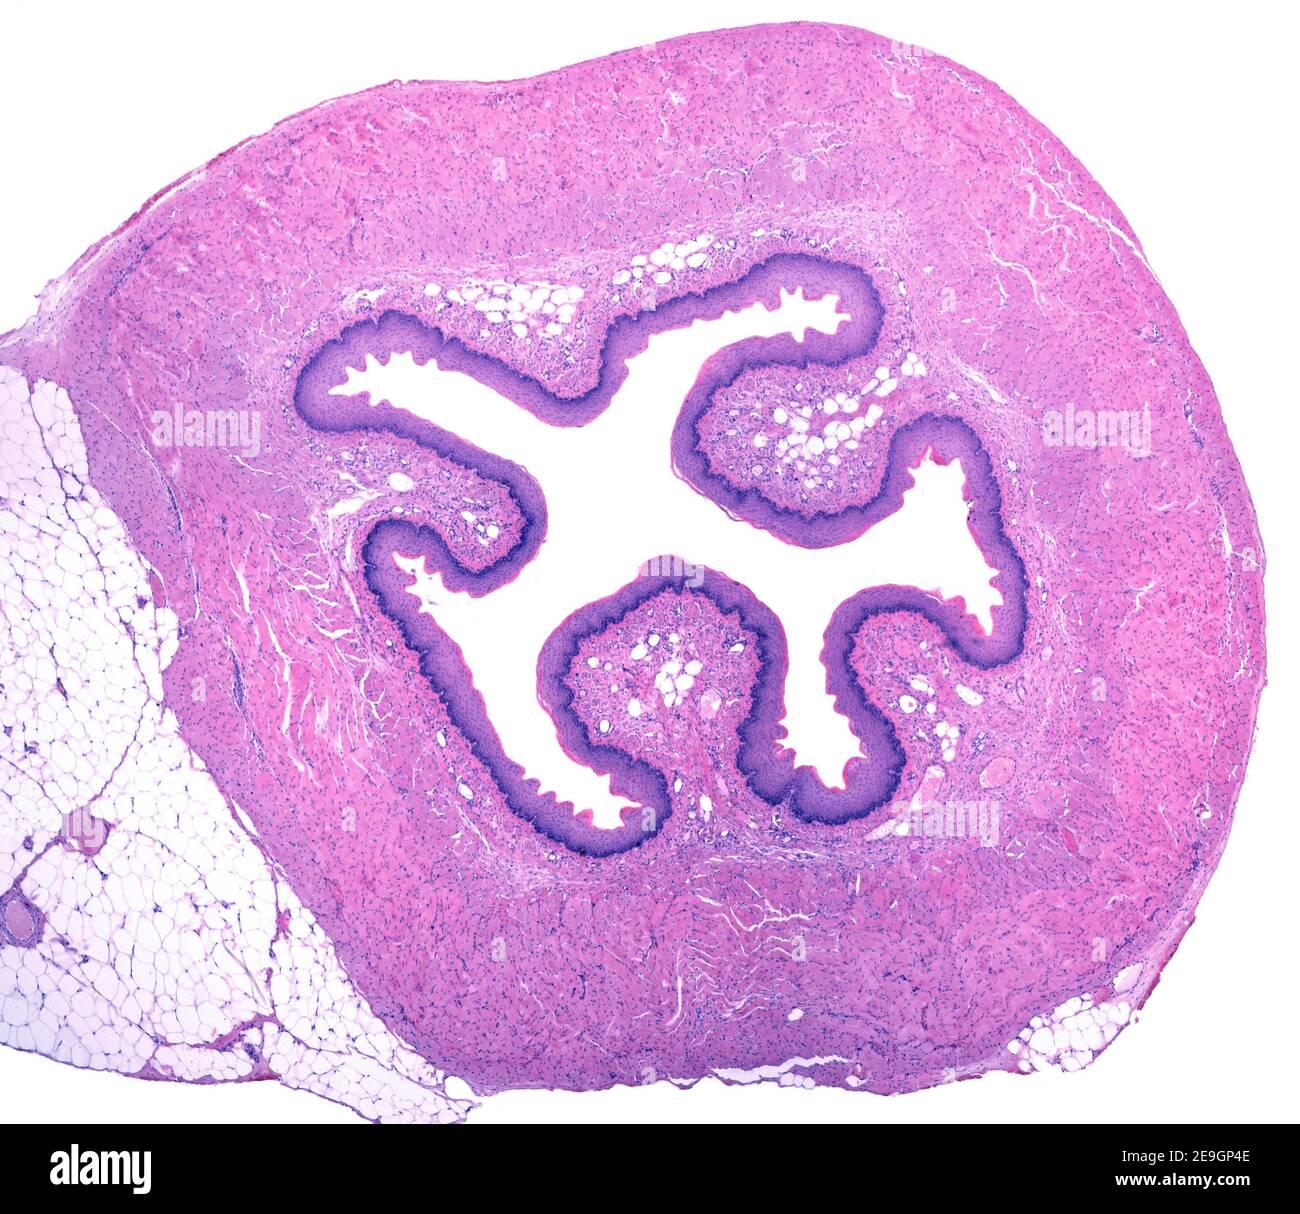 Micrografia a basso ingrandimento che mostra una sezione trasversale dell'esofago. La mucosa che riveste il lume centrale mostra pieghe coperte da uno scamoso stratificato Foto Stock